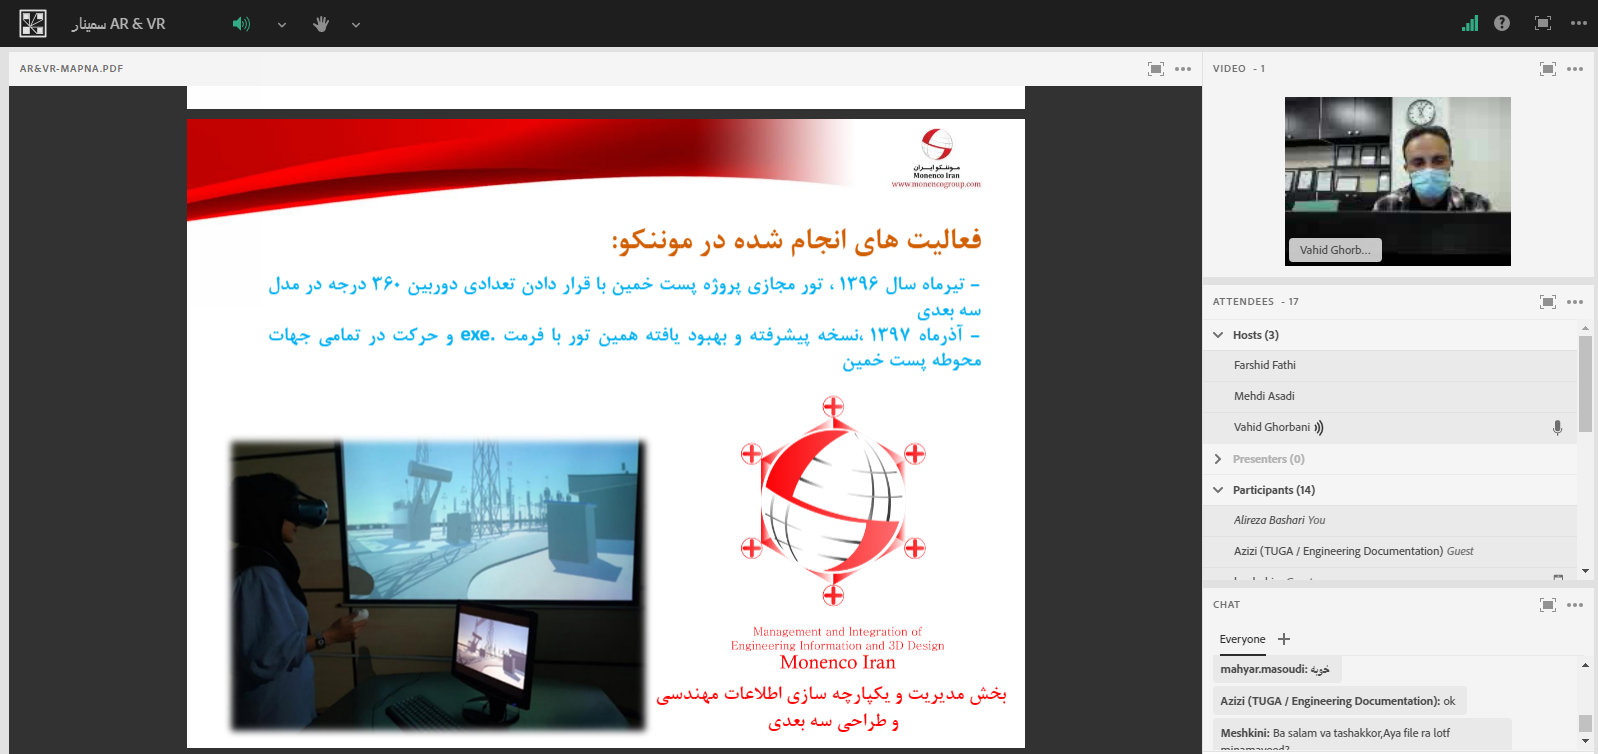 برگزاری وبینار "بکارگیری تکنولوژی AR و VR در انجام خدمات مهندسی، احداث و بهره برداری پروژه های حوزه تولید نیرو" توسط موننکو ایران